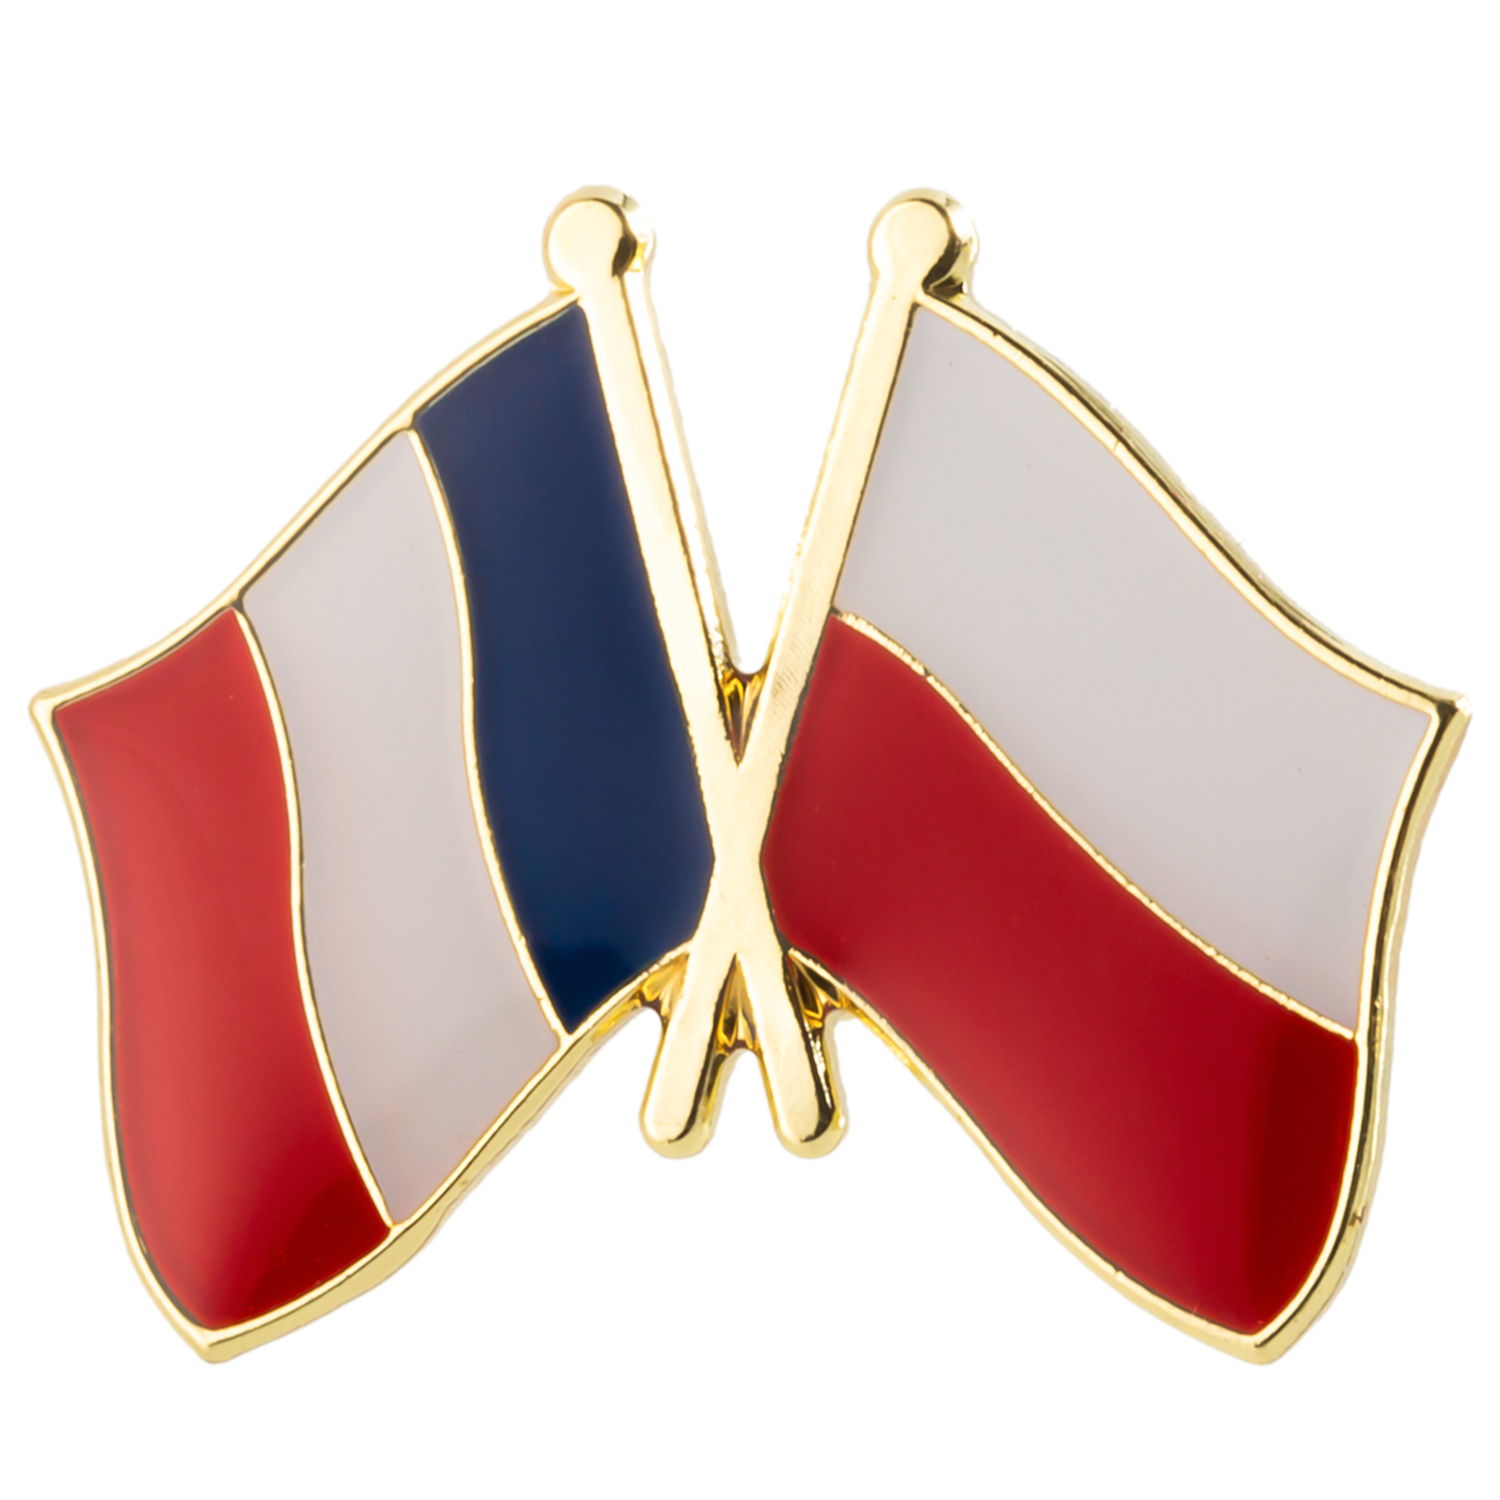 Frankreich Pakistan Freundschaft Flagg Metall Pin Abzeichen Dekorative Broschenstifte für Kleidung